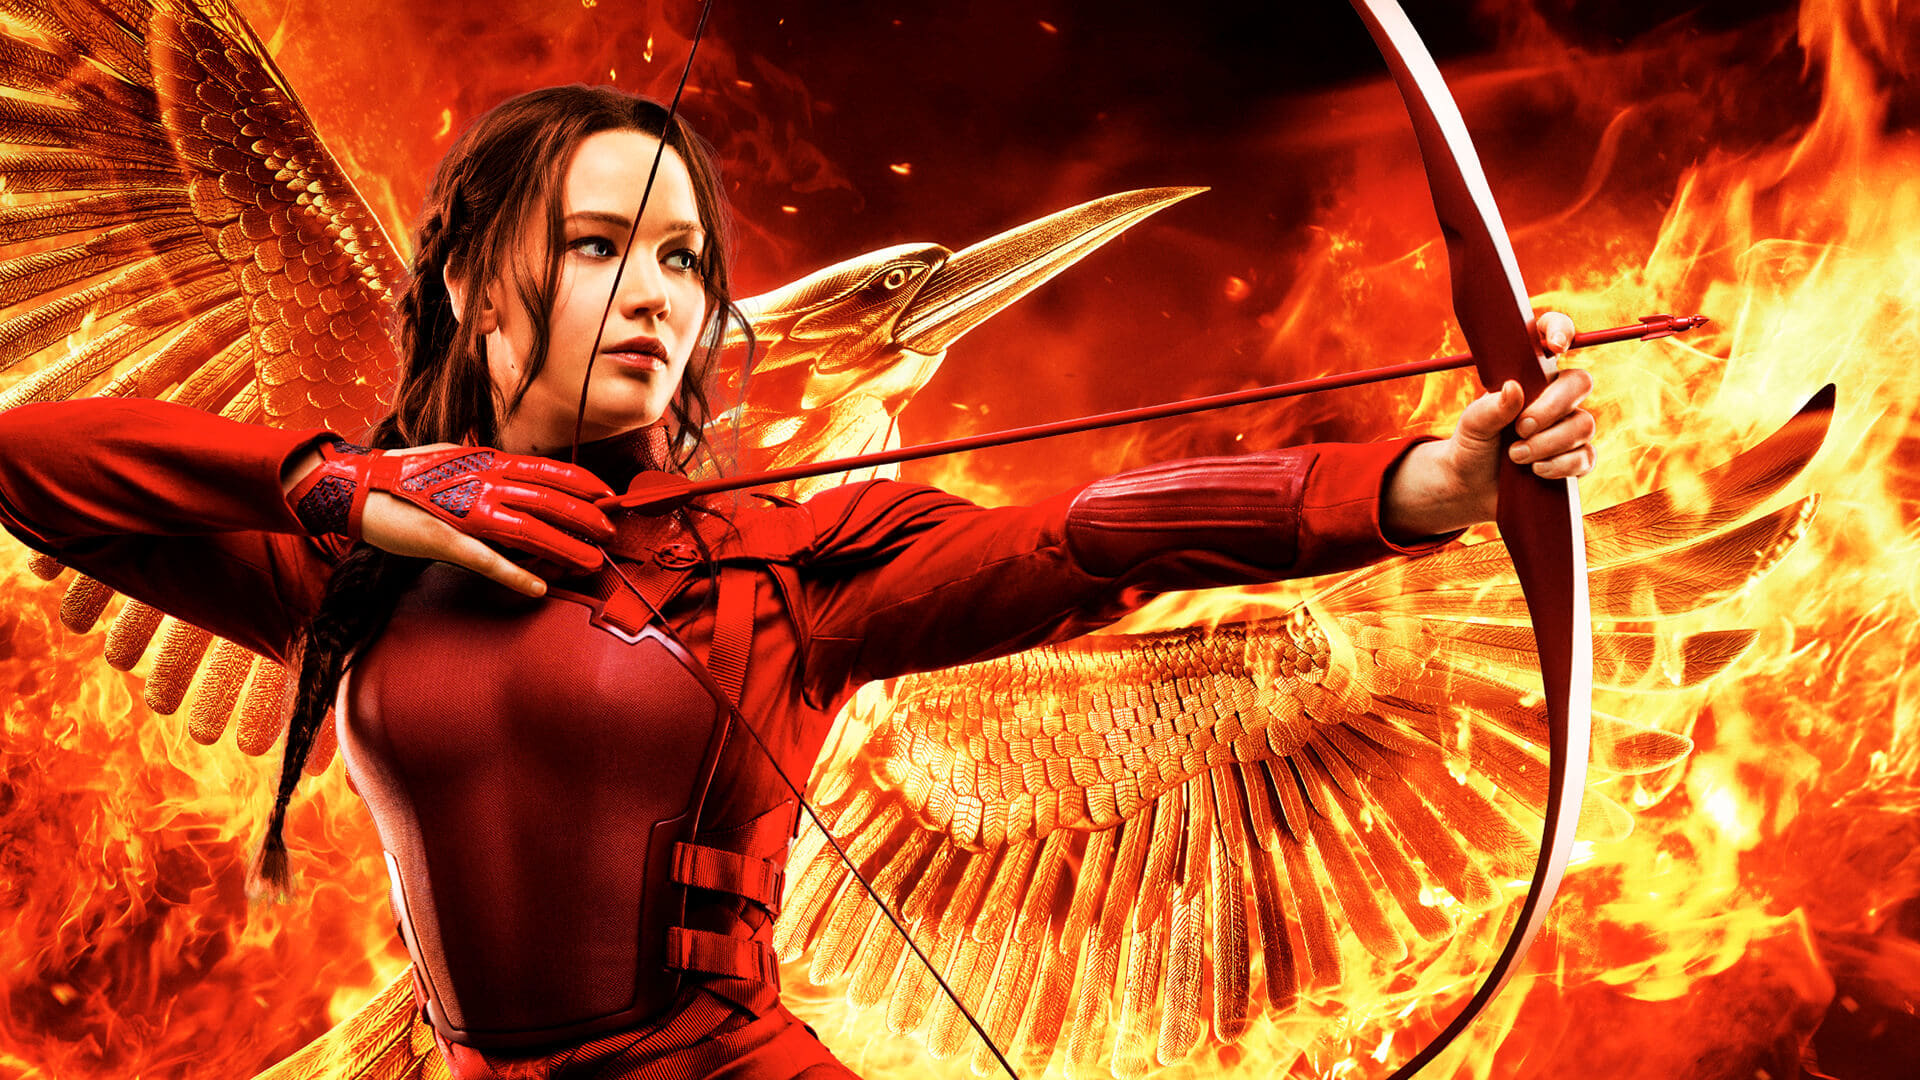 Hunger Games, une saga qui dérange - Version Femina